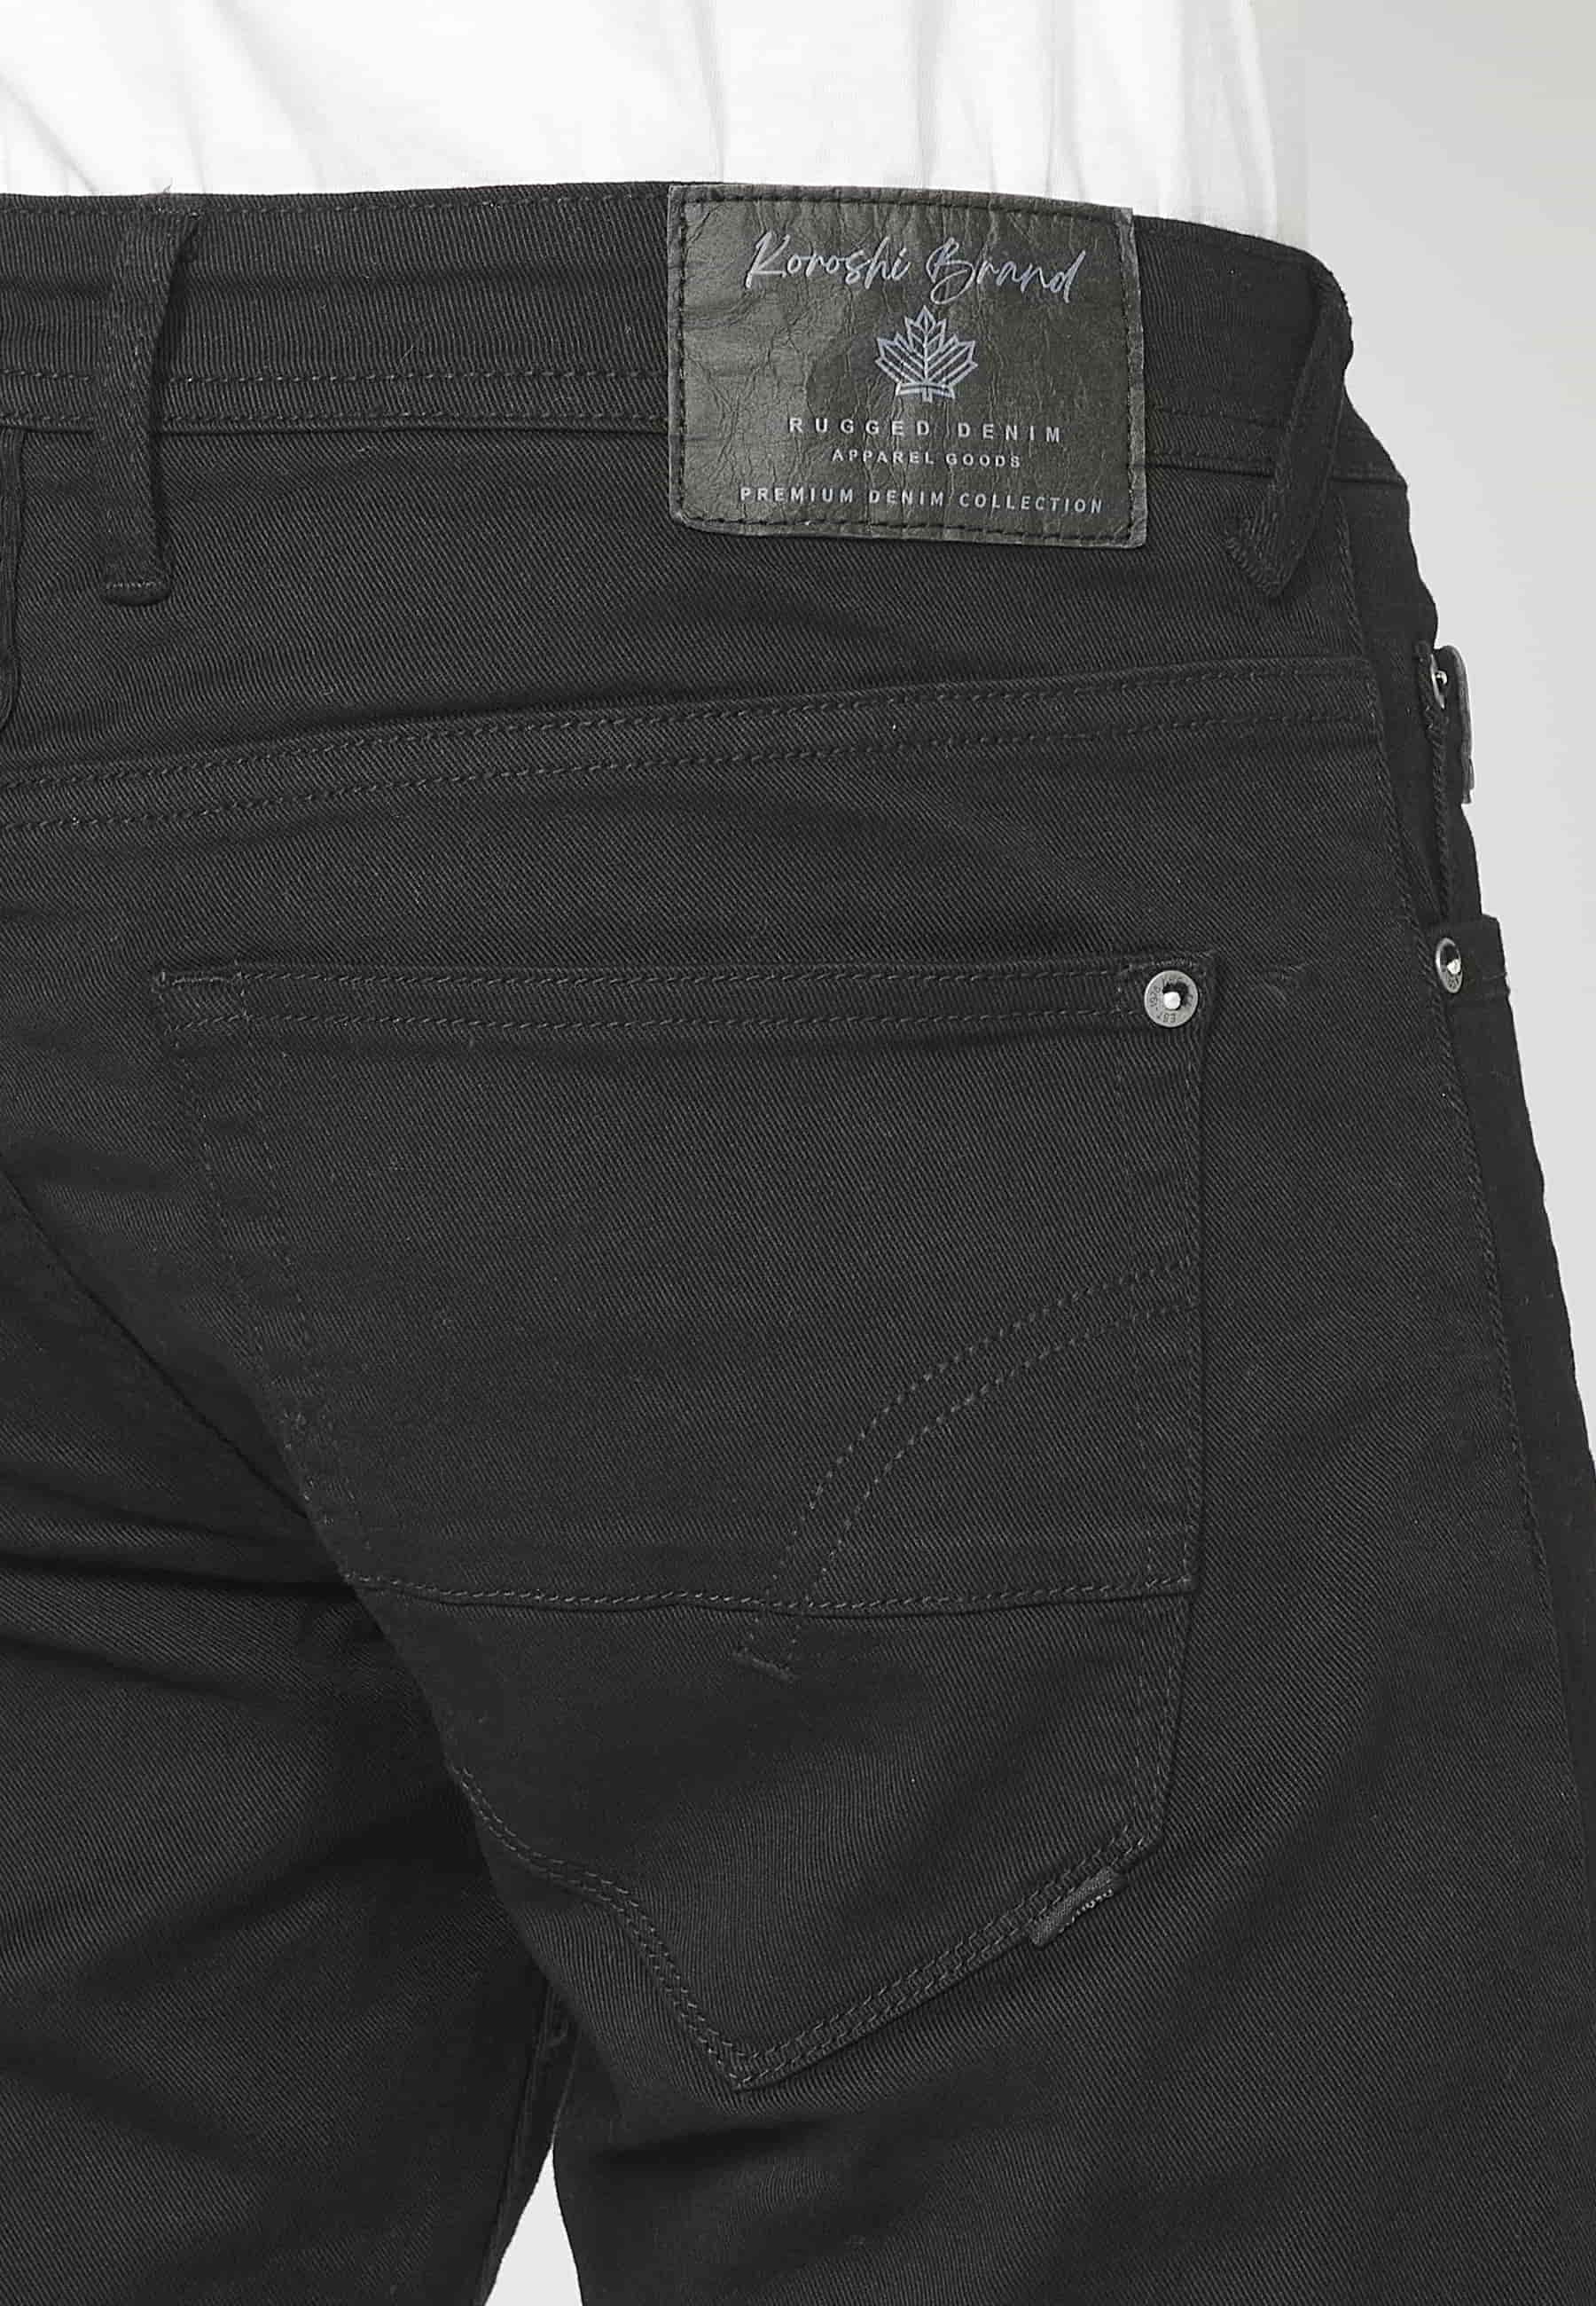 Pantalon long stretch coupe classique, à cinq poches, coloris Noir, pour Homme